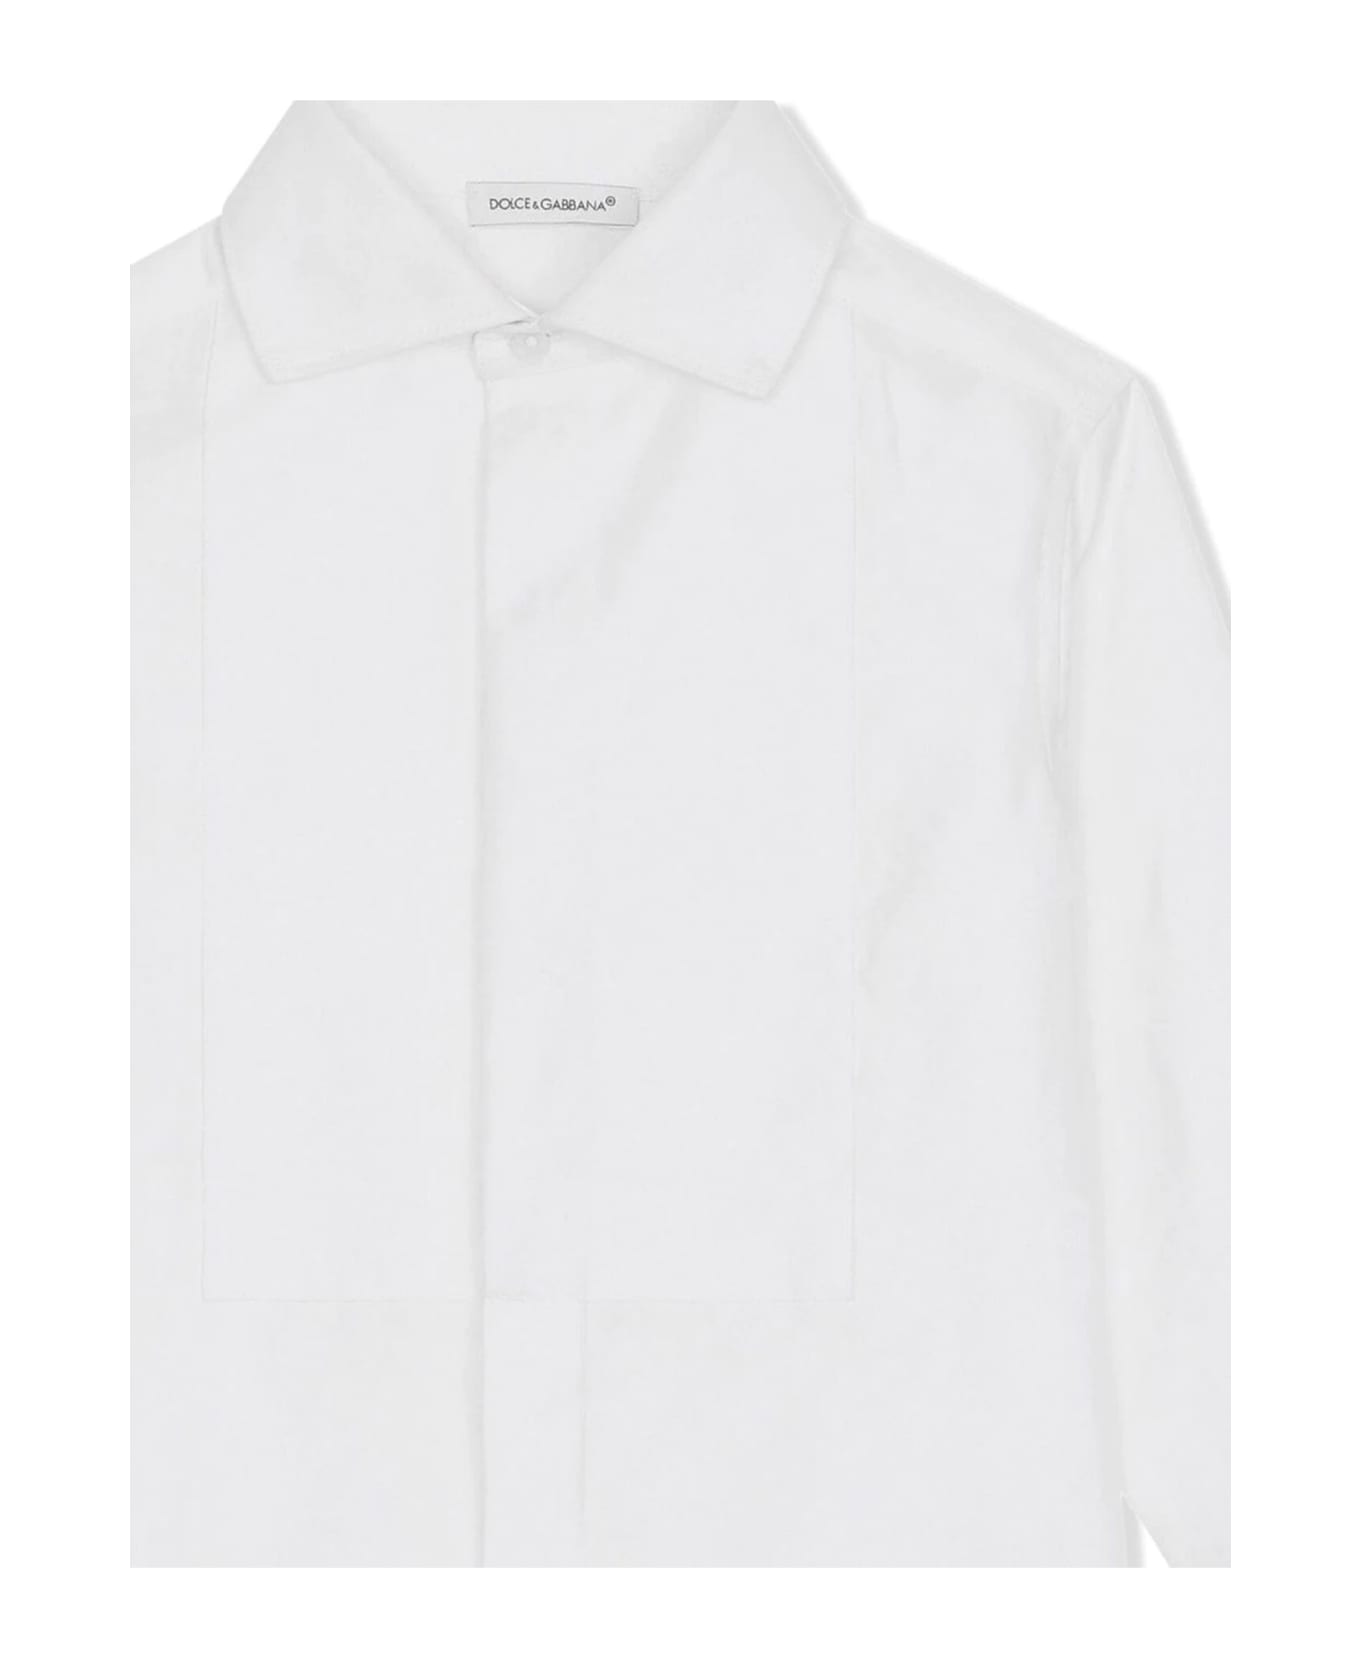 Dolce & Gabbana Shirts White - White